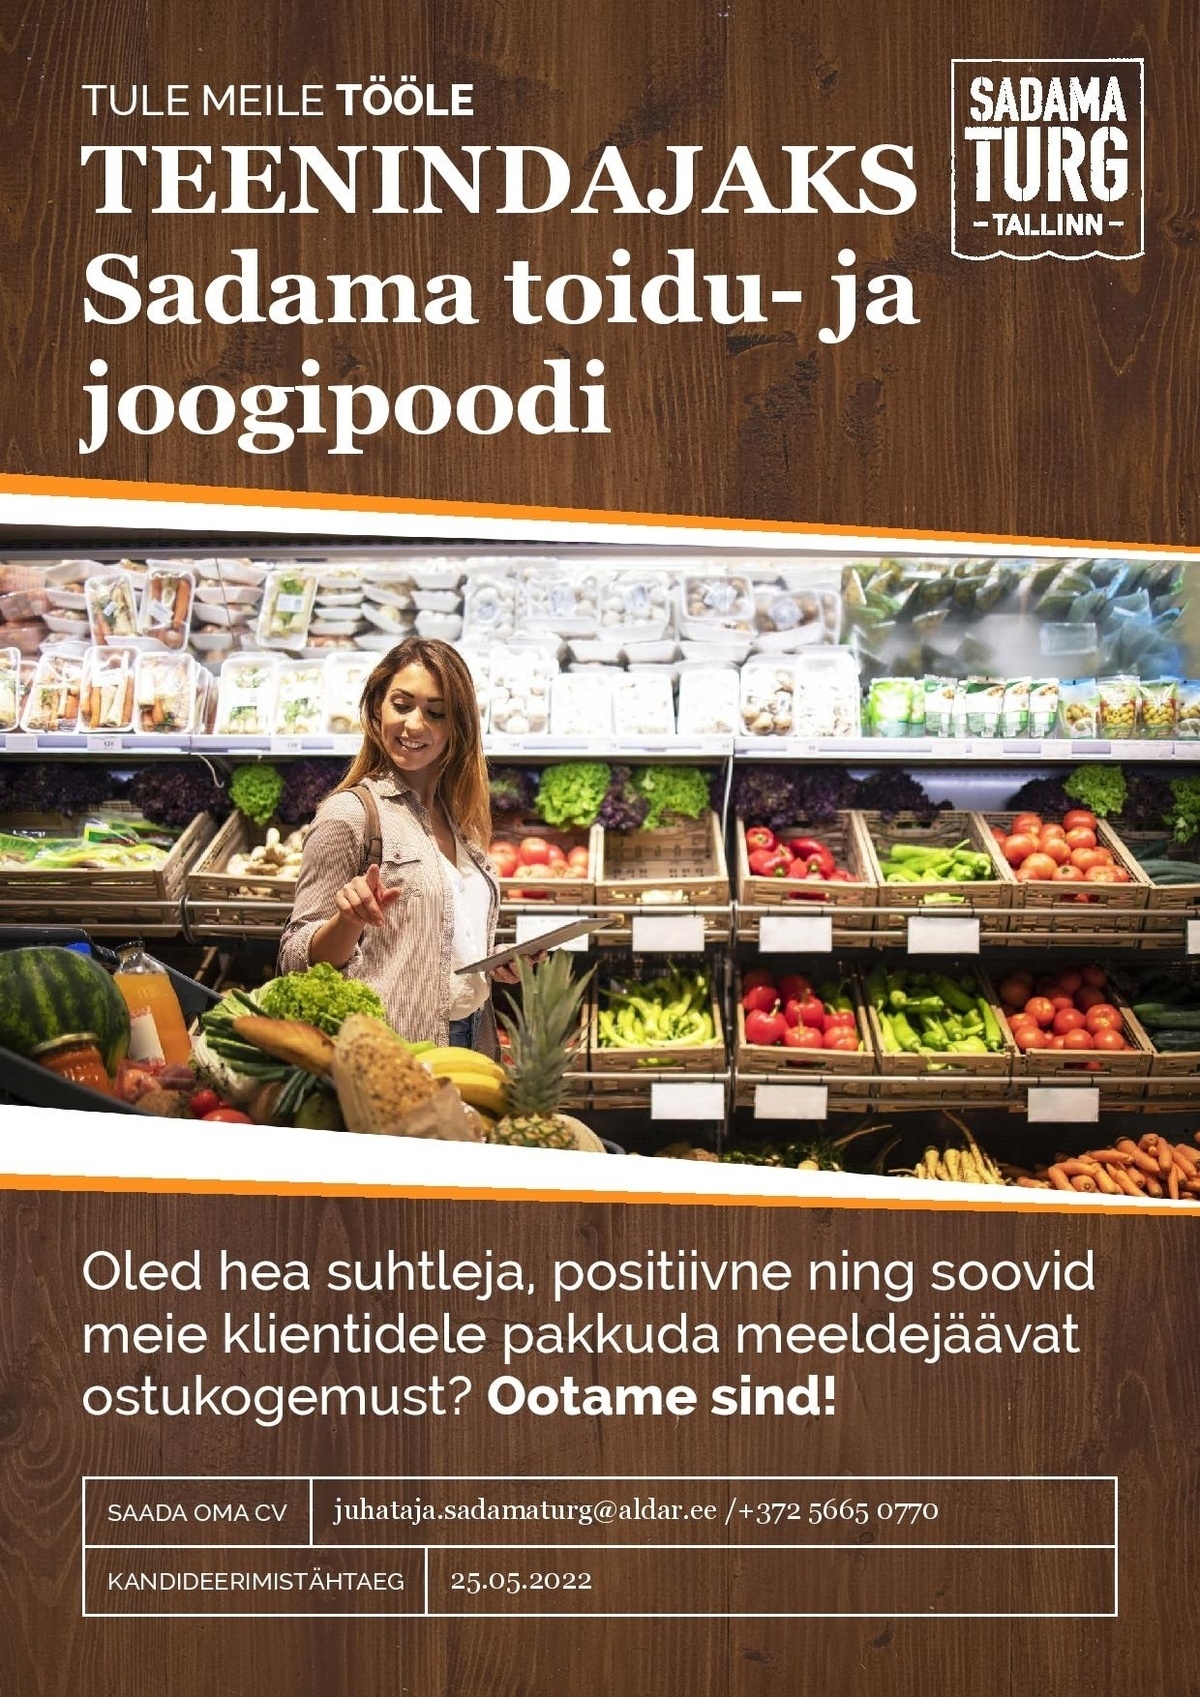 OÜ Aldar Eesti Teenindaja Sadama Turu toidu- ja joogipoodi